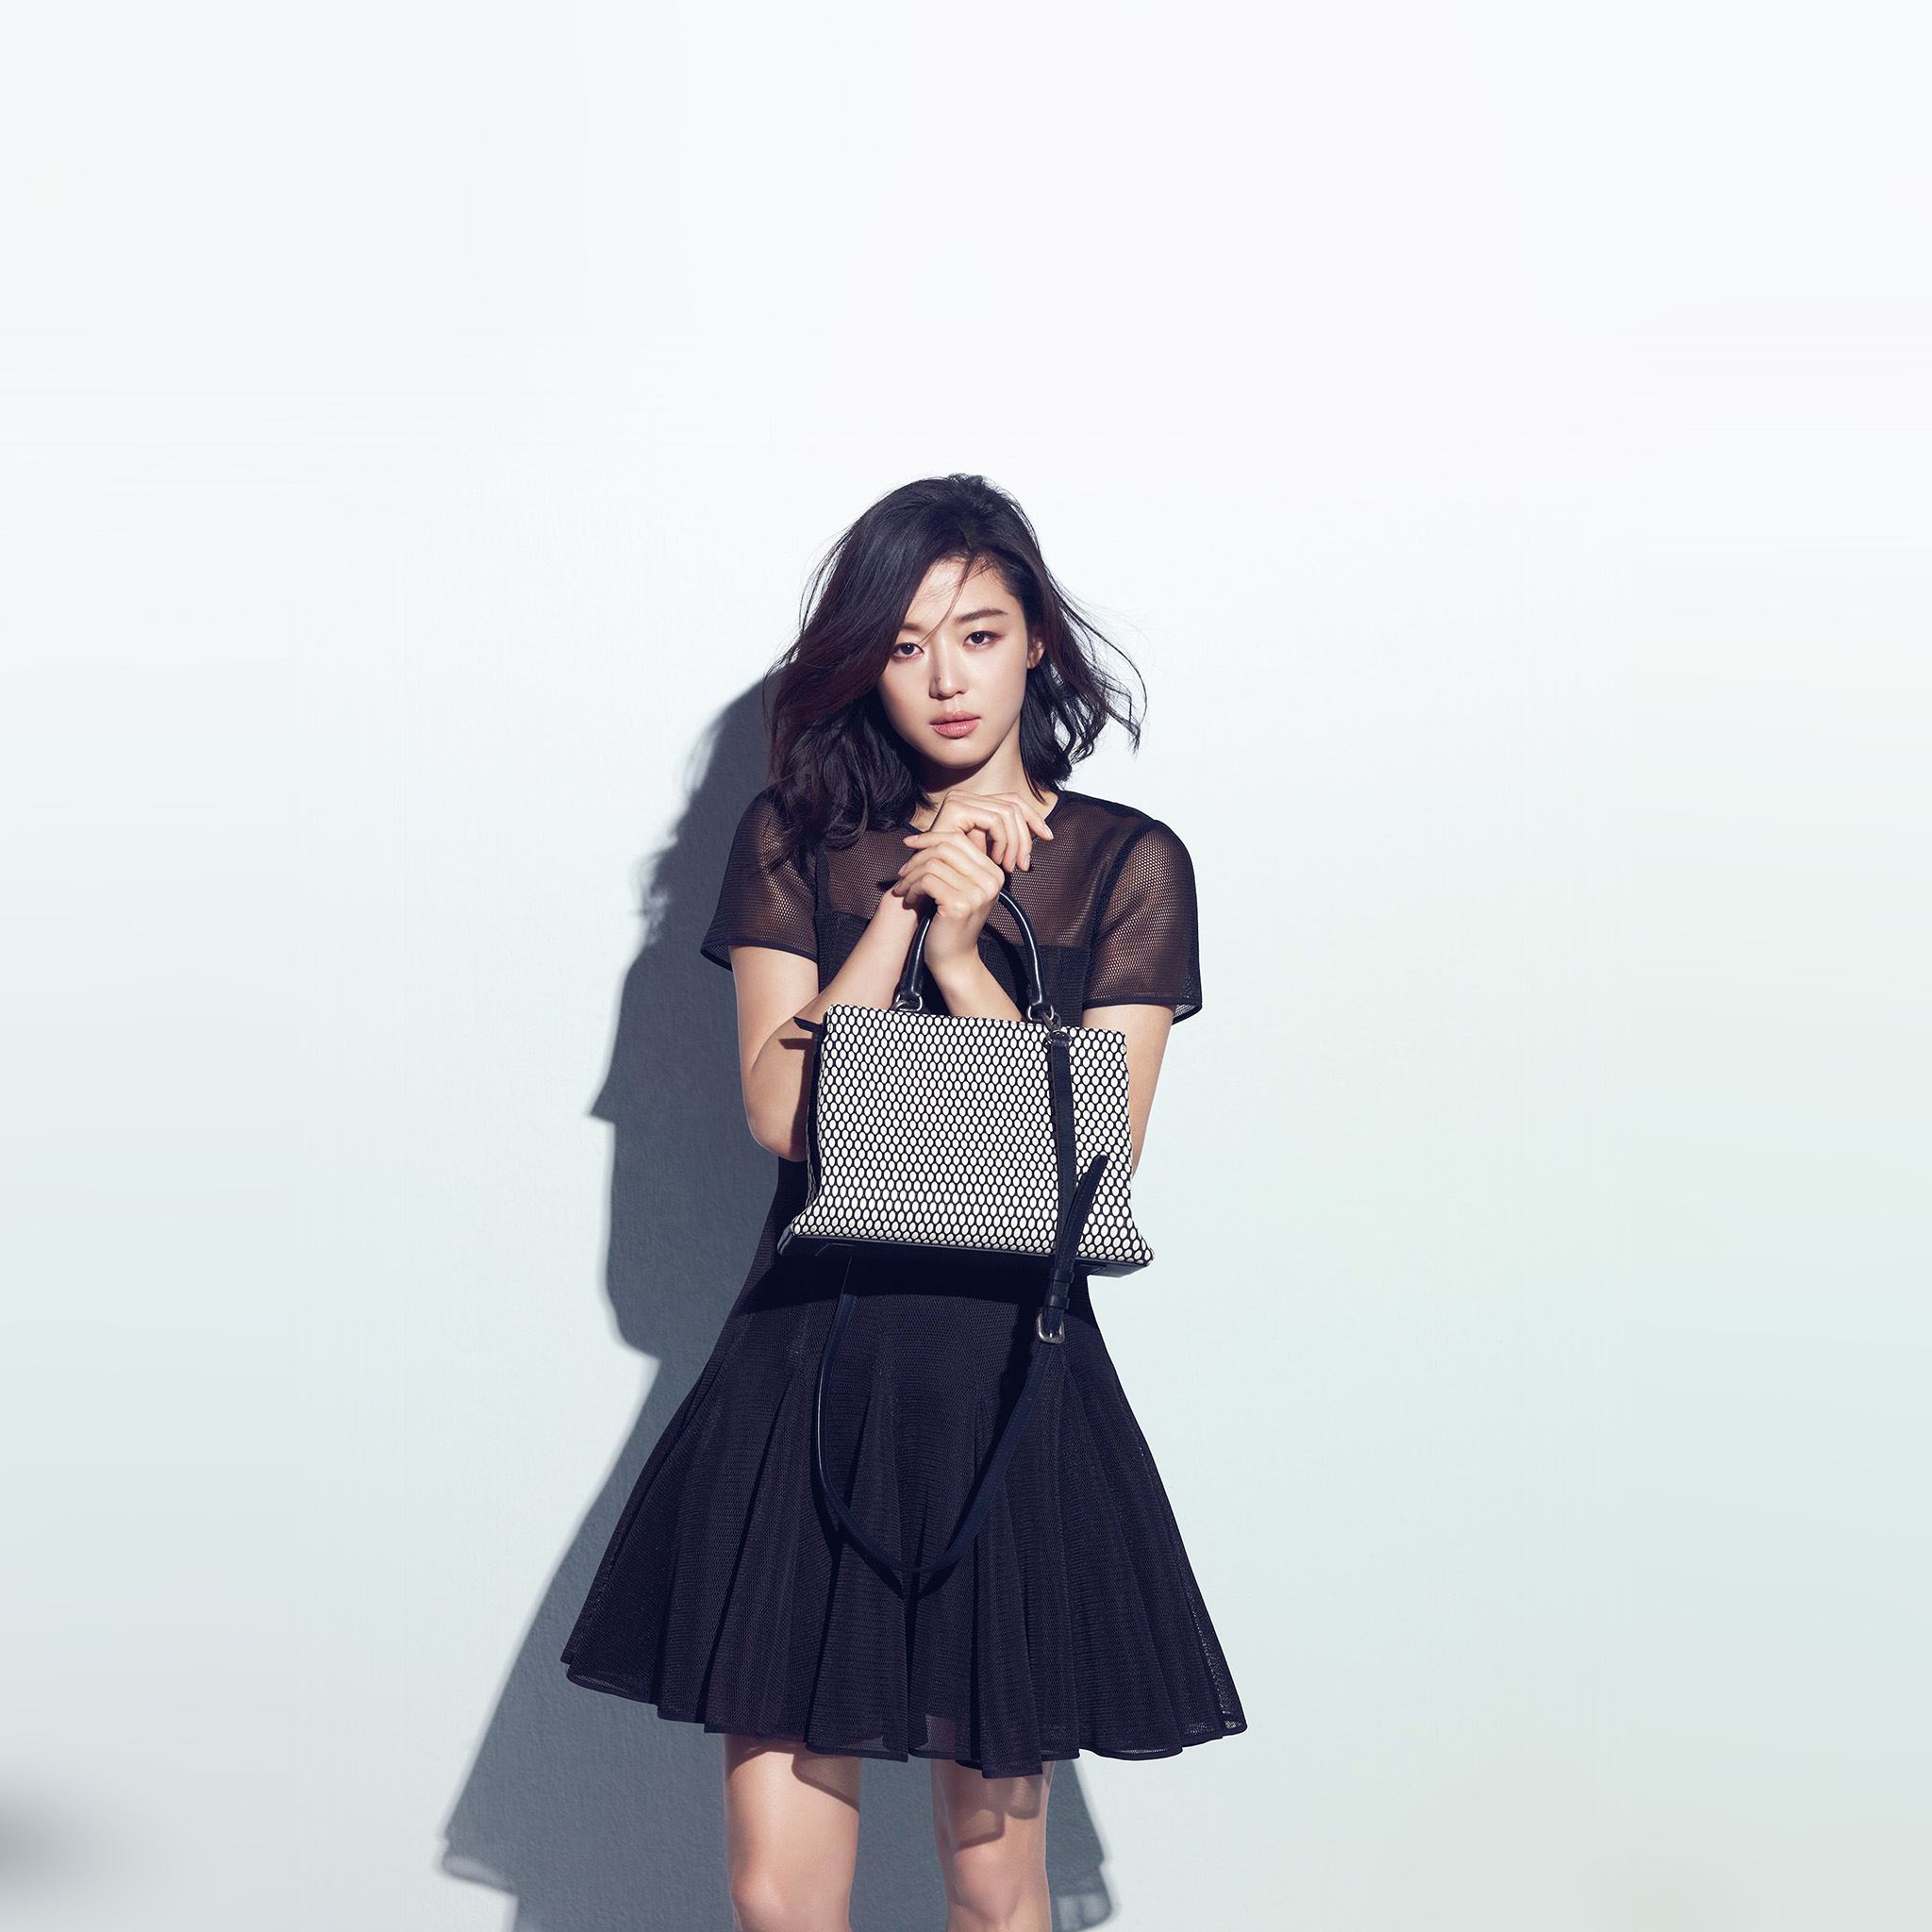 Jun Ji Hyun Actress Kpop Cute Beauty Blue iPad Air wallpaper 